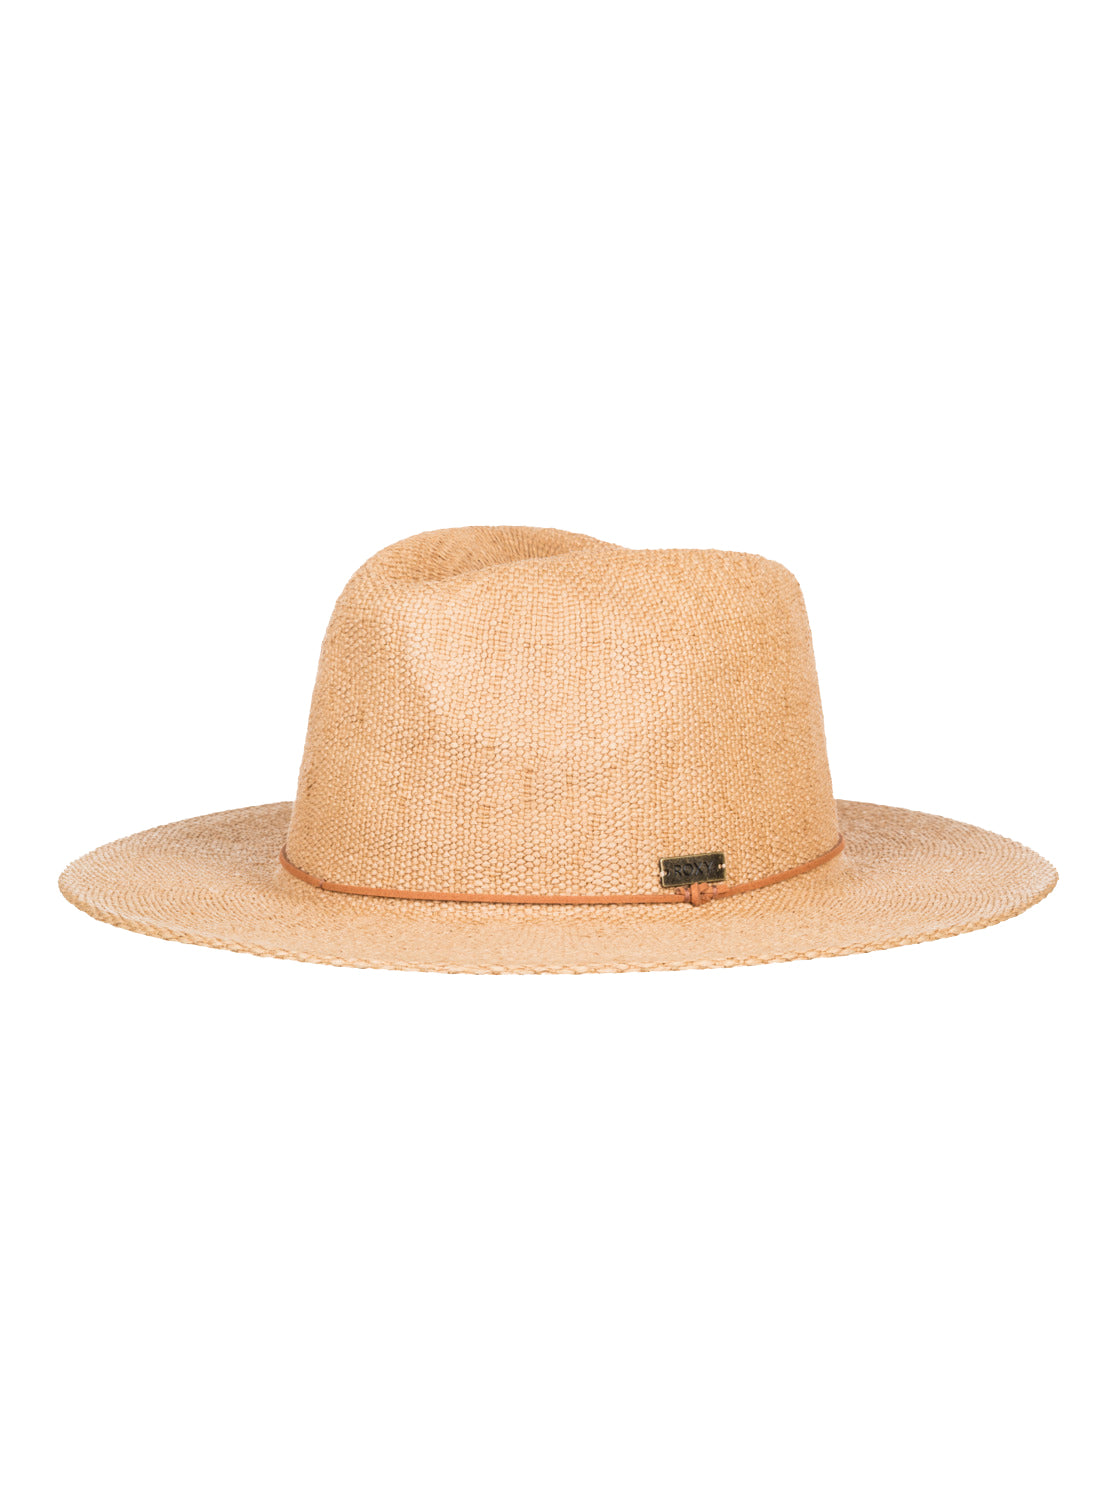 Roxy Early Sunset Panama Hat YEF0 S/M